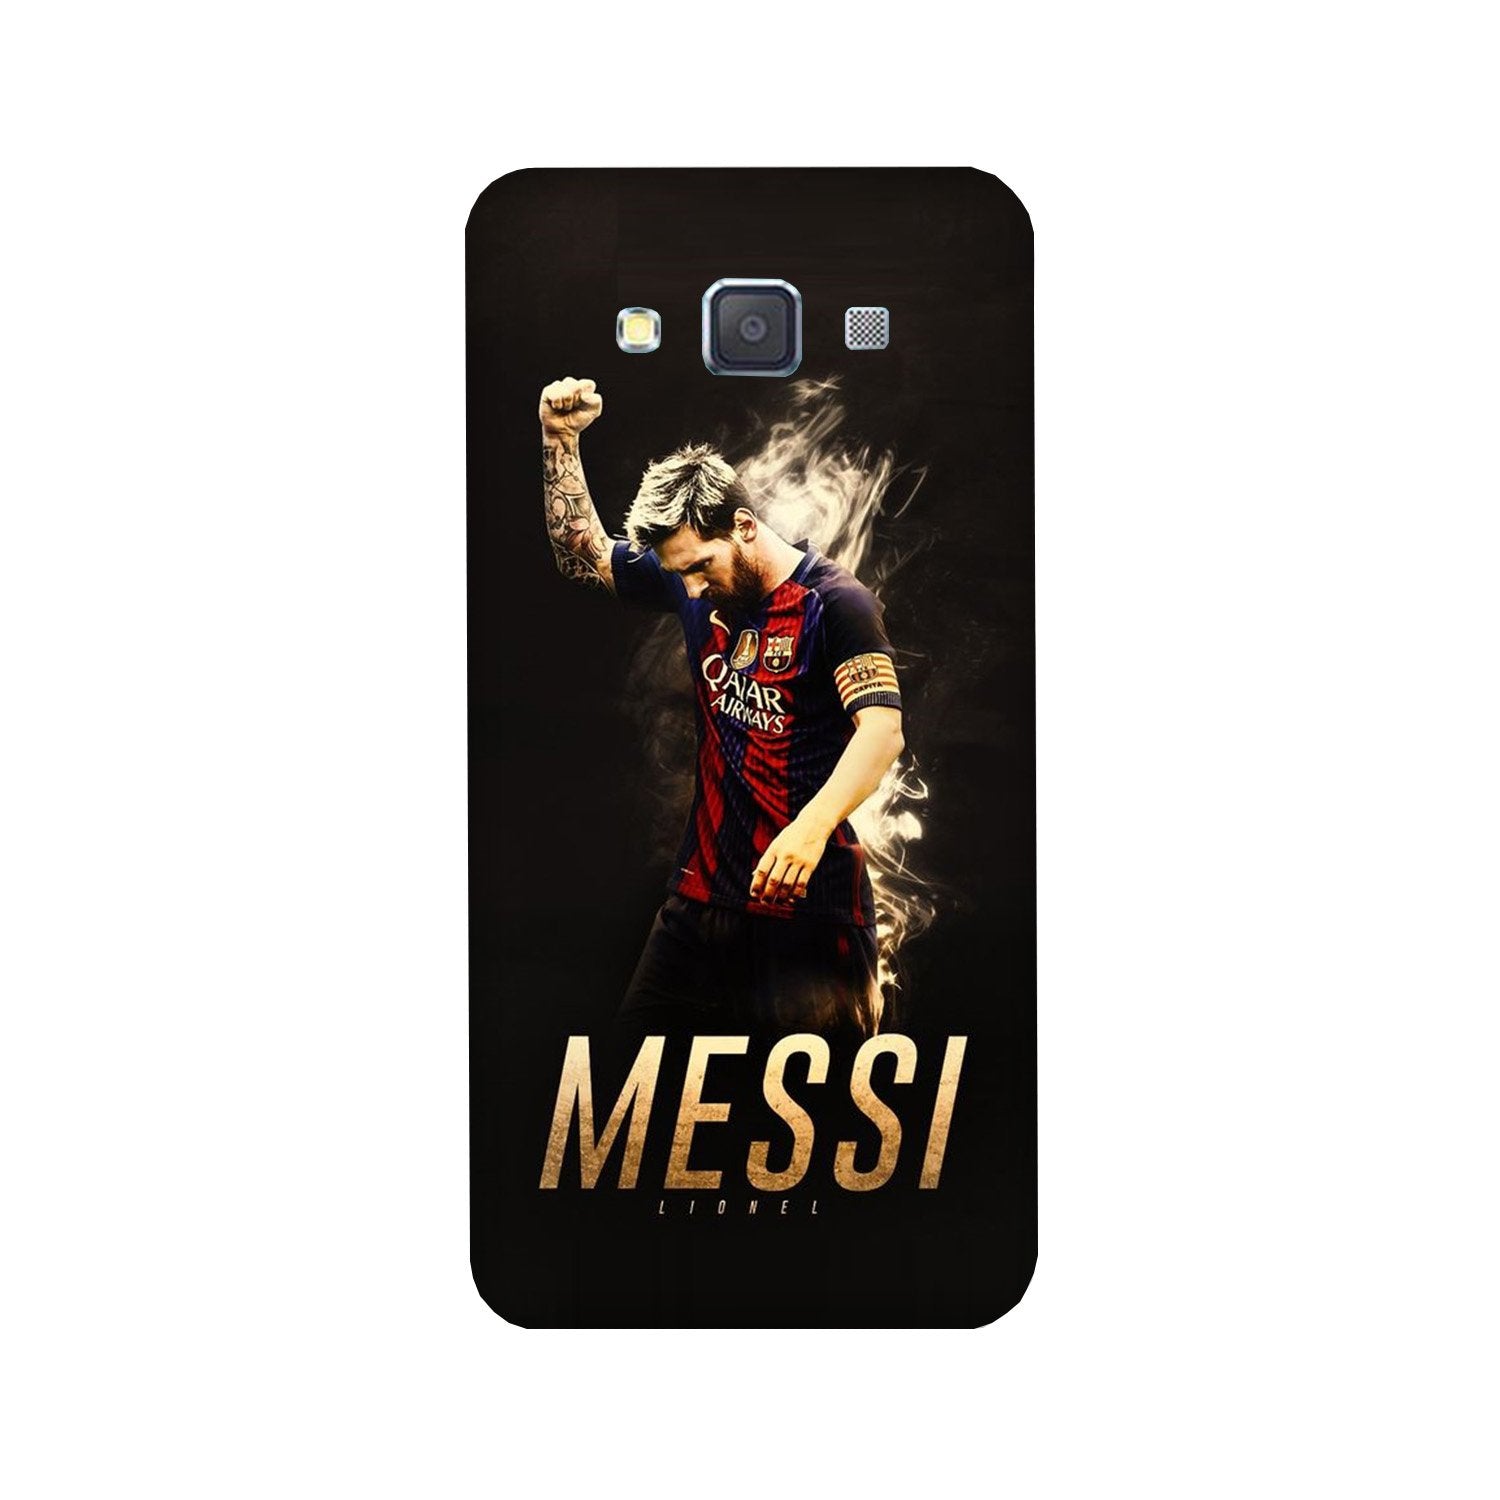 Messi Case for Galaxy Grand Prime(Design - 163)